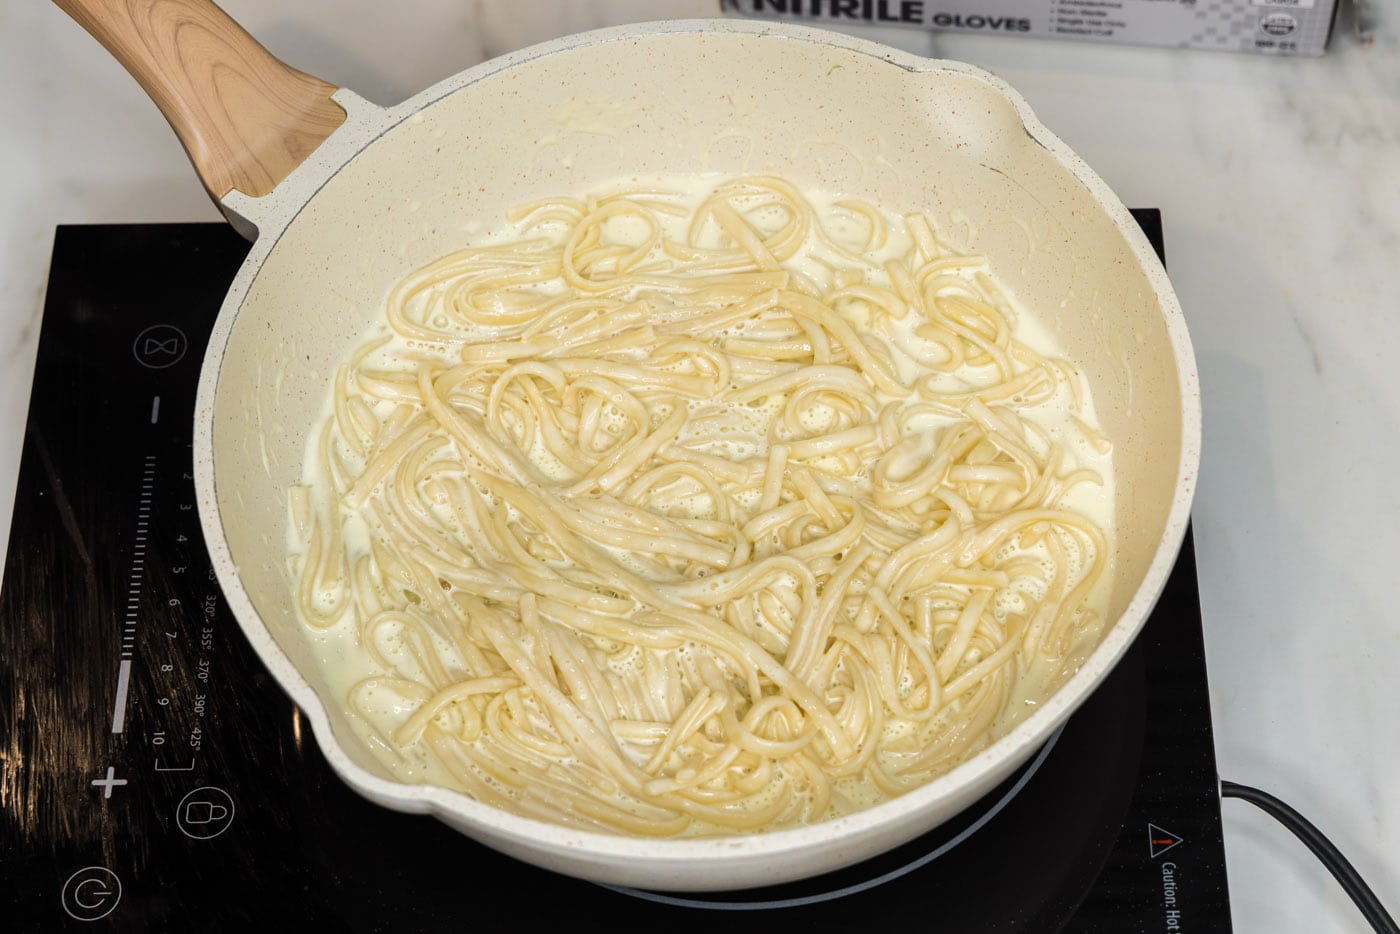 linguine noodles in skillet with lobster sauce